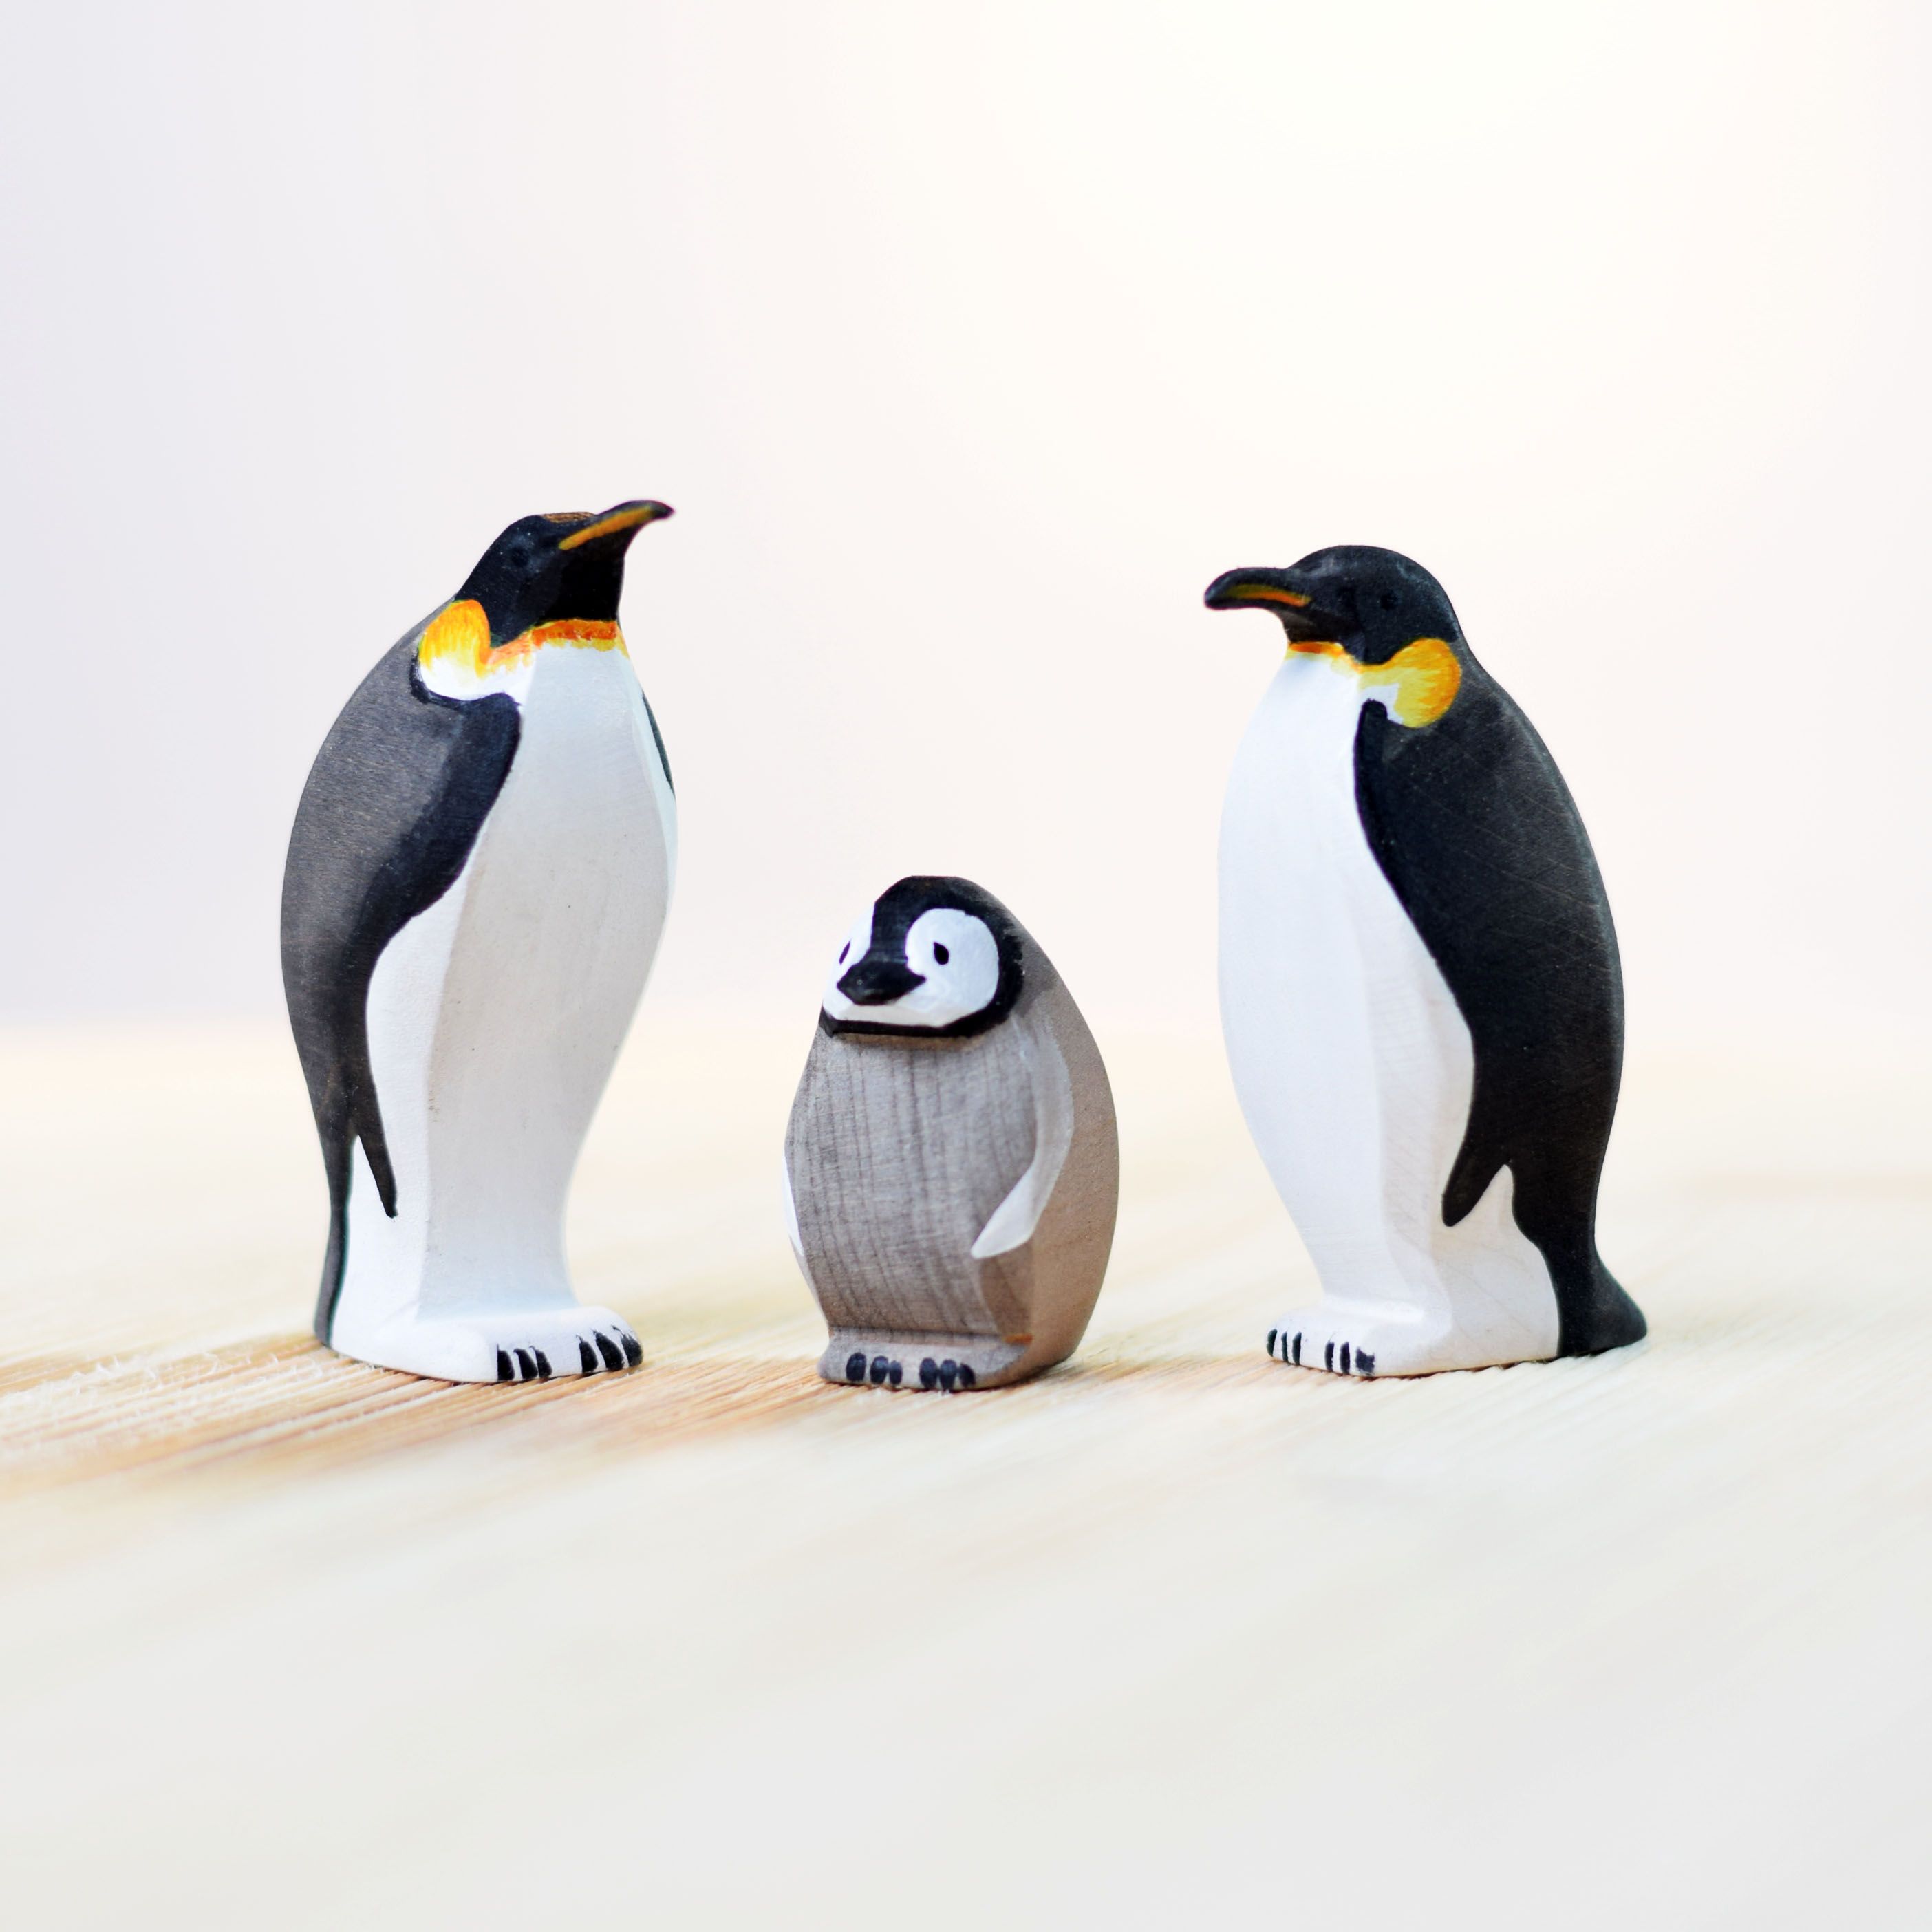 kraam wees gegroet motto Bumbu toys 2043 - Houten handgemaakte pinguin set (3 pinguins)